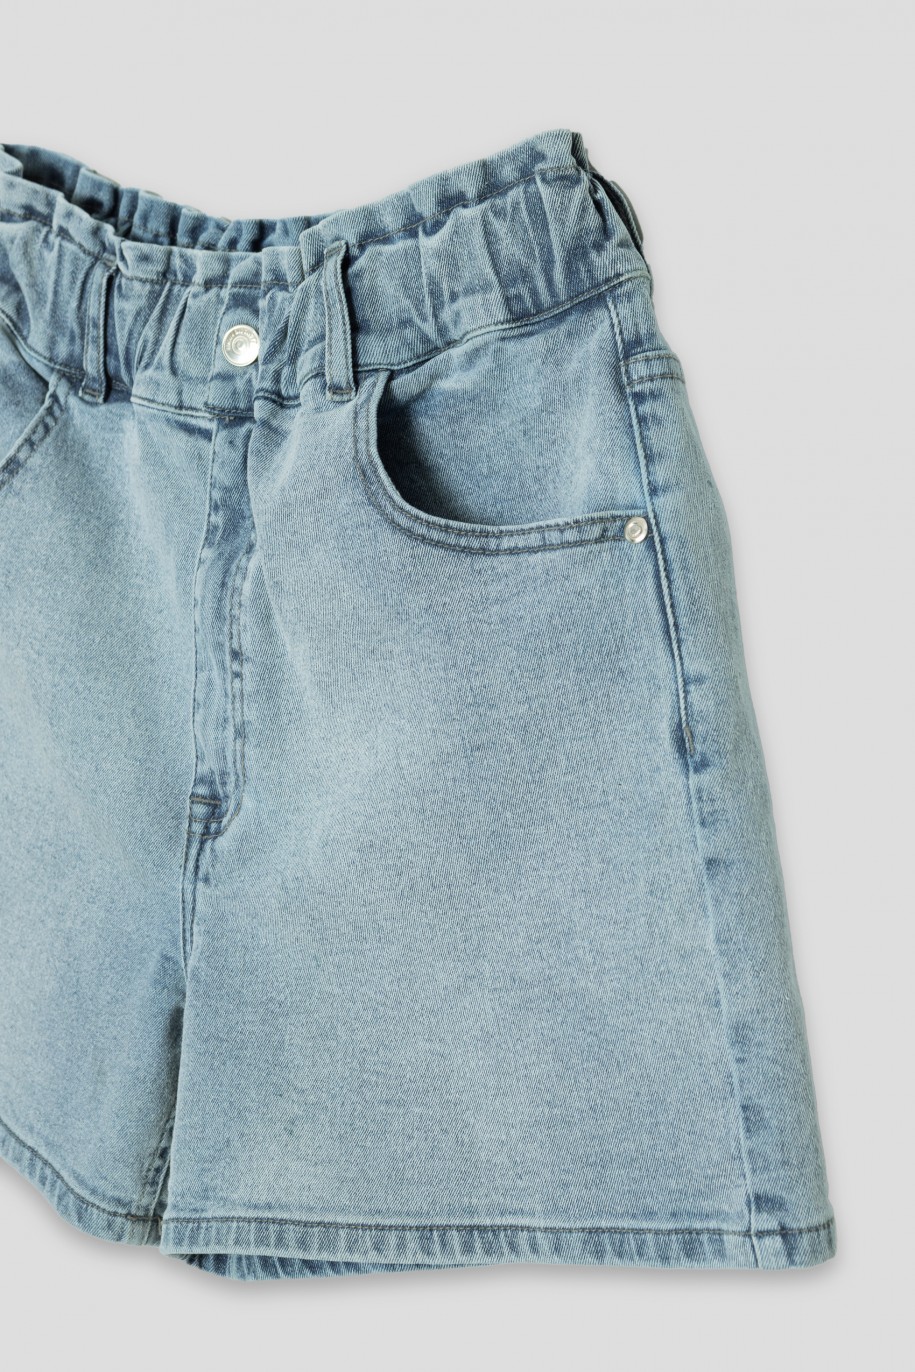 Niebieskie jeansowe krótkie spodenki - 41555